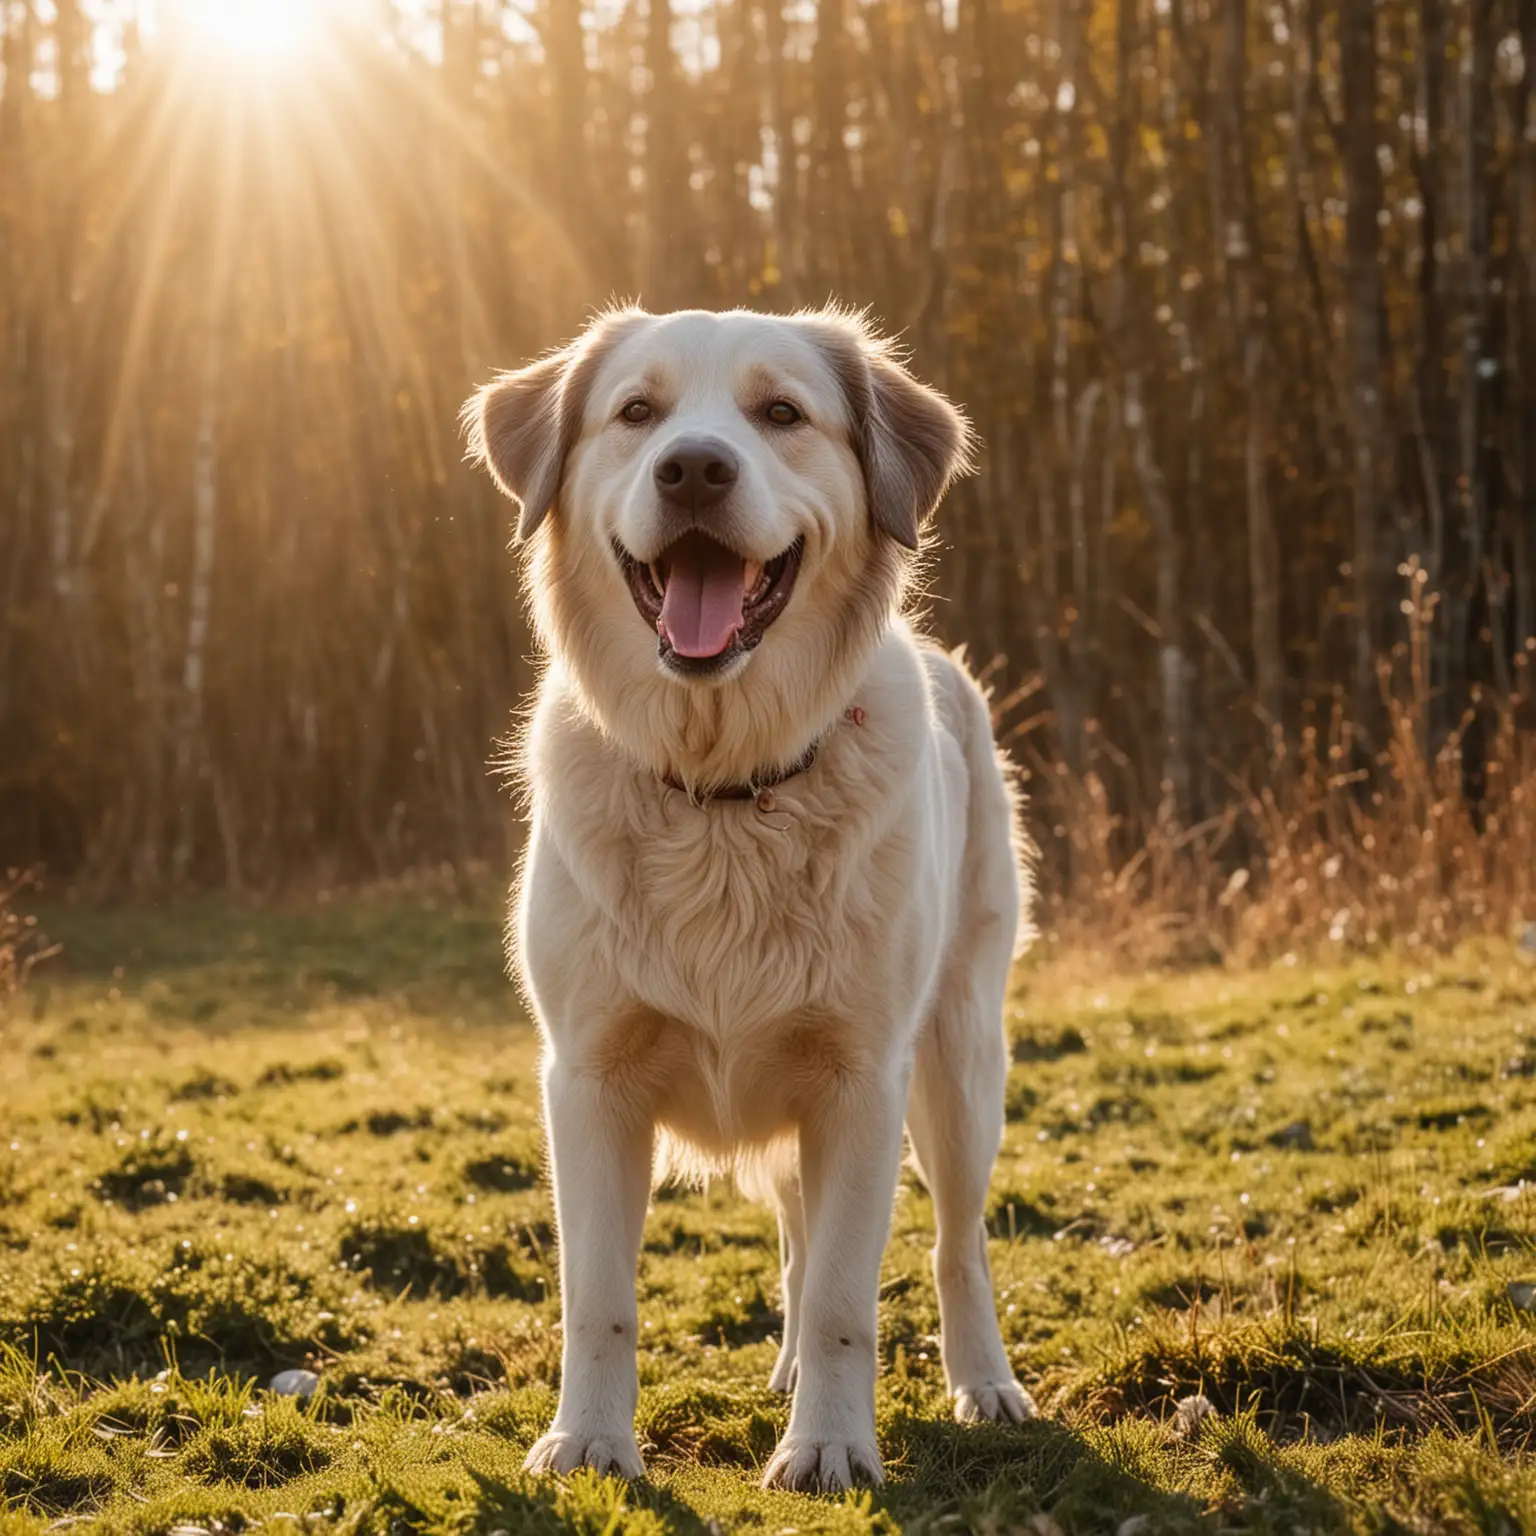 крупная счастливая собака стоит стоя и радостно с высунутым языком и счастливыми глазами аппетитом  ждет своего любимого хозяина  красивая природа счастье настроение светит солнце а в воздухе легкая дымка
